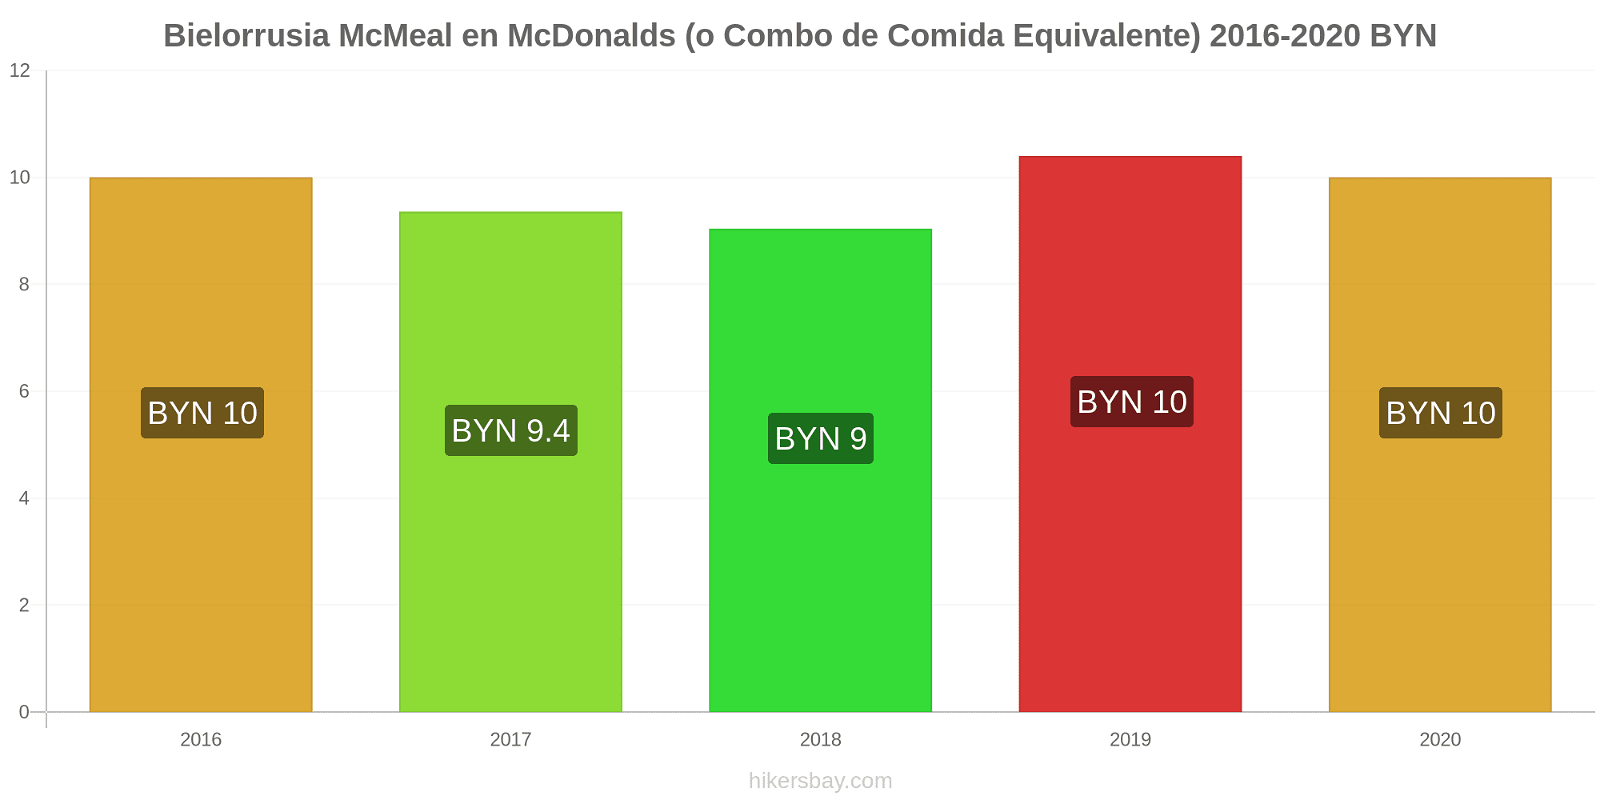 Bielorrusia cambios de precios McMeal en McDonalds (o menú equivalente) hikersbay.com